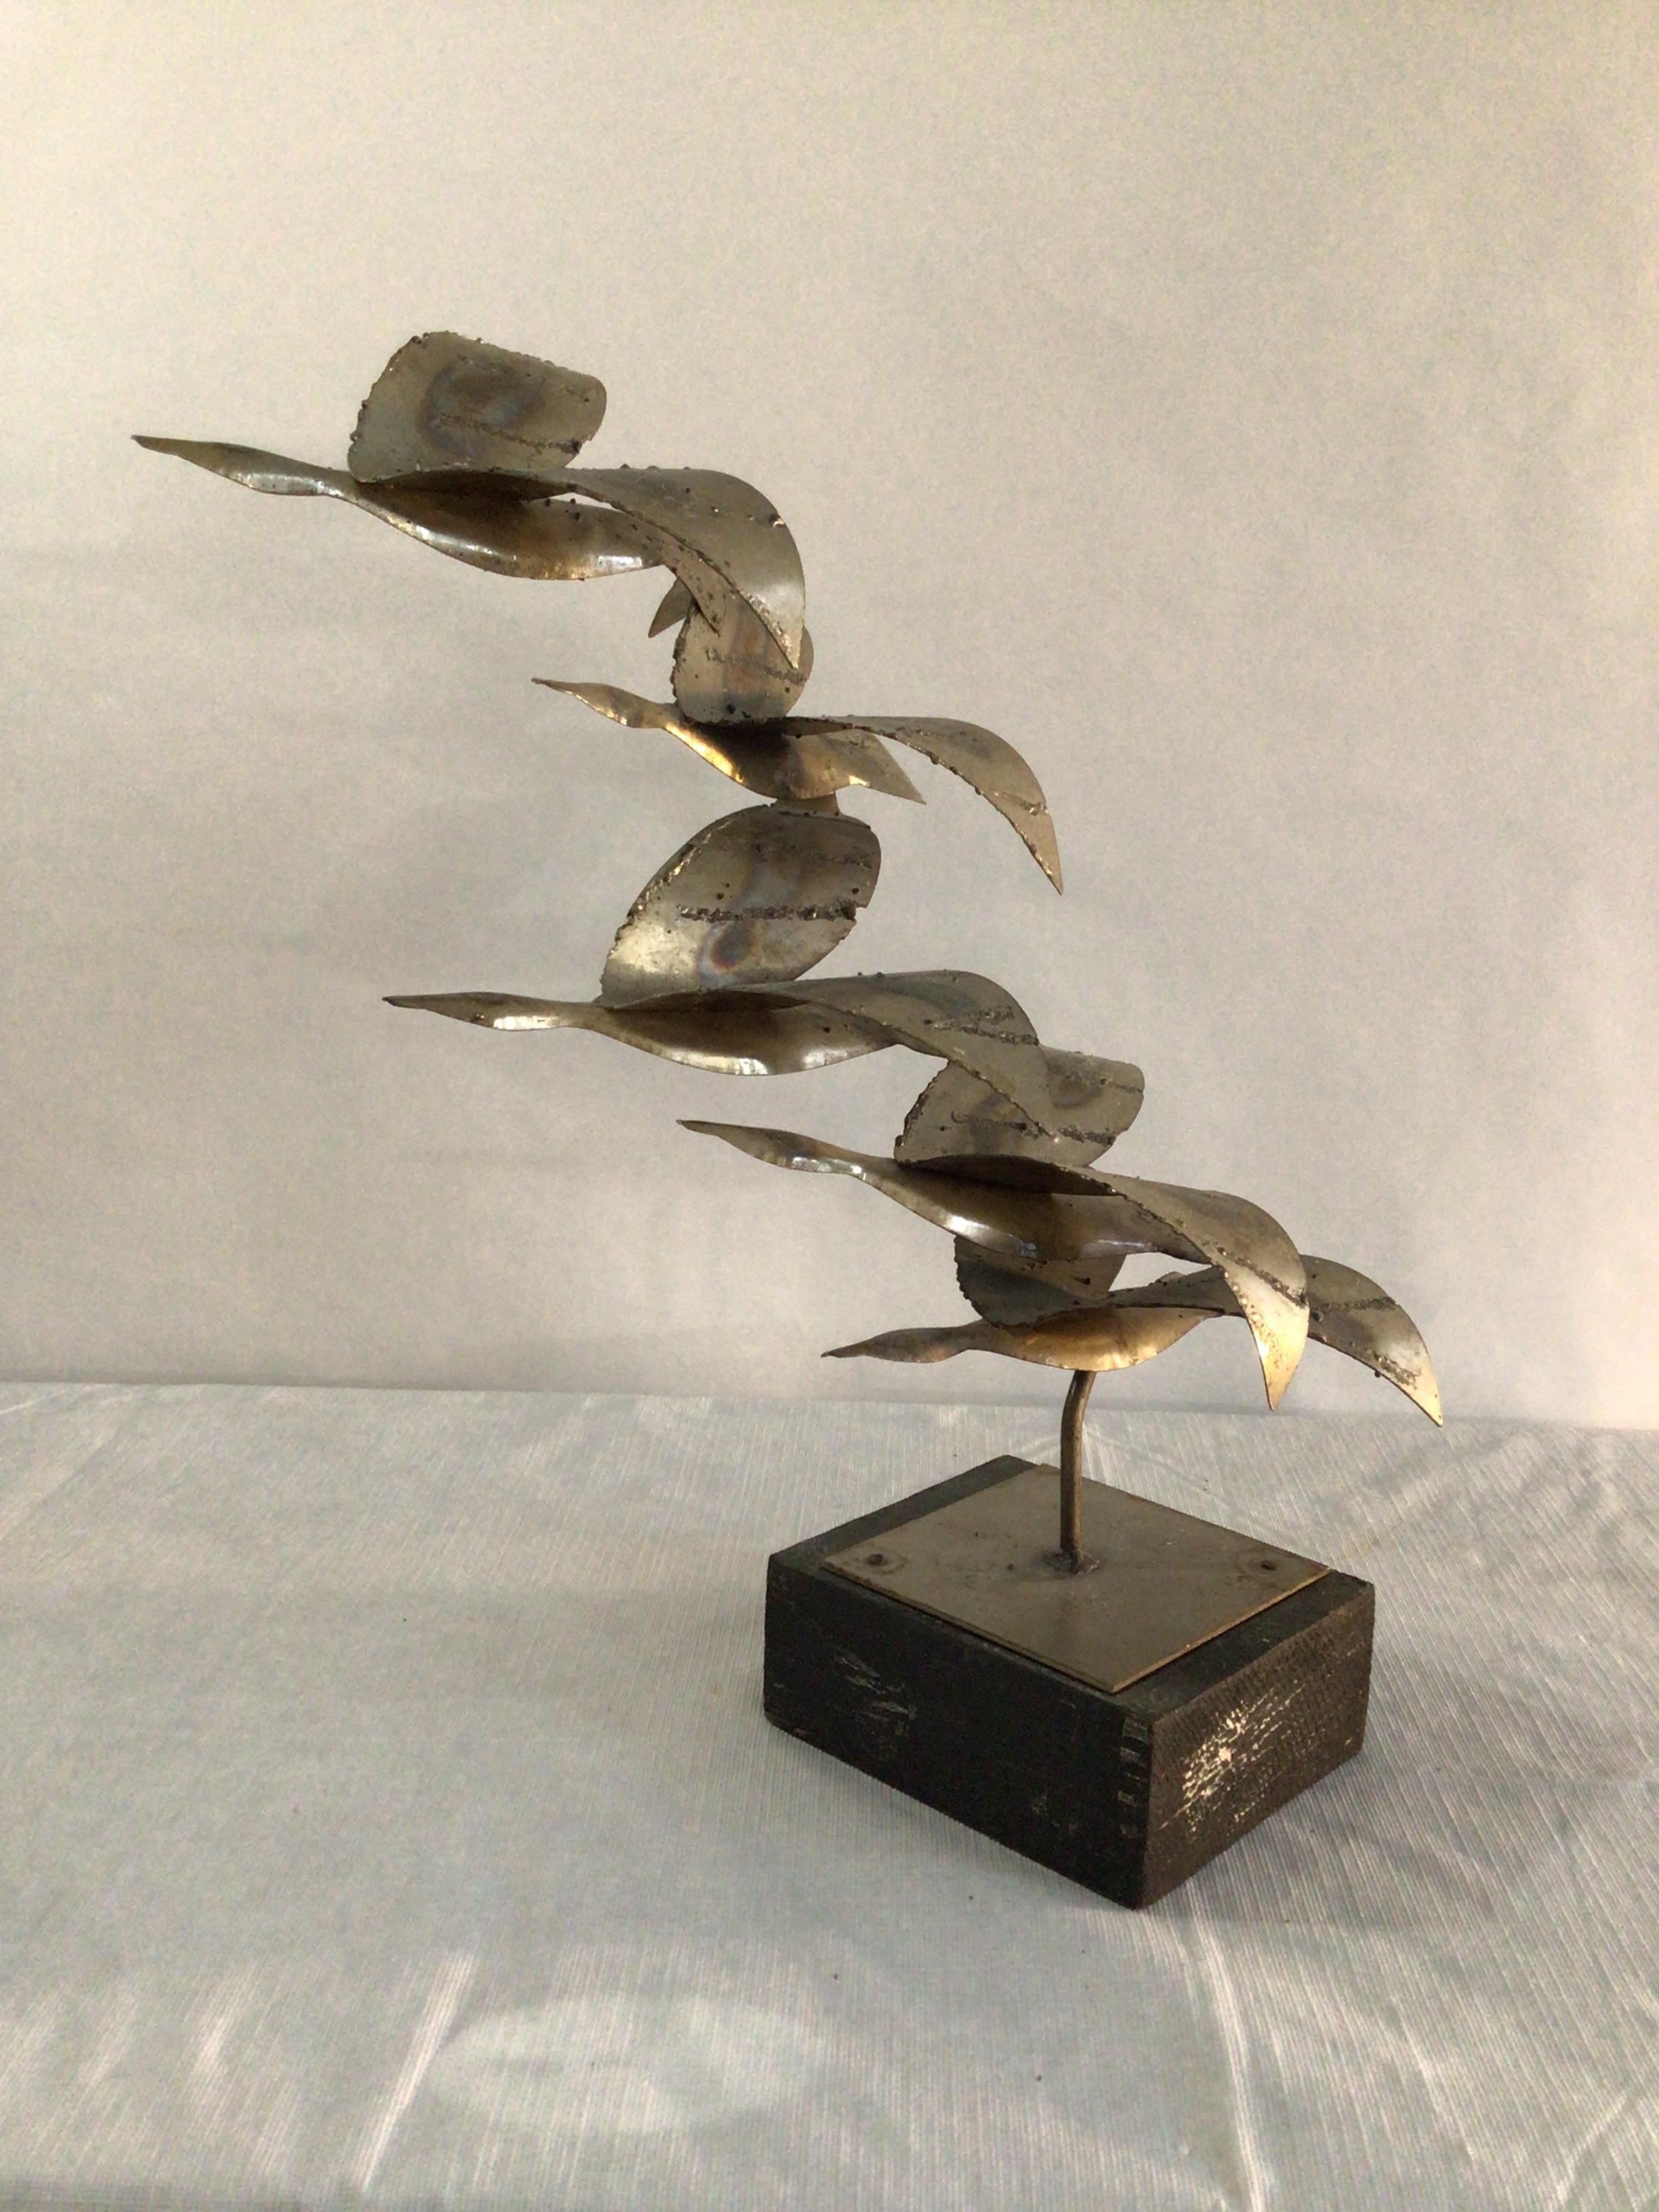 Sculpture en chrome des années 1970 représentant des oiseaux en vol sur une base en bois peint
5 Oiseaux en vol qui montent
Sculpture brutale vintage
Richement texturé avec du métal patiné découpé au chalumeau, monté sur une base en bois de couleur